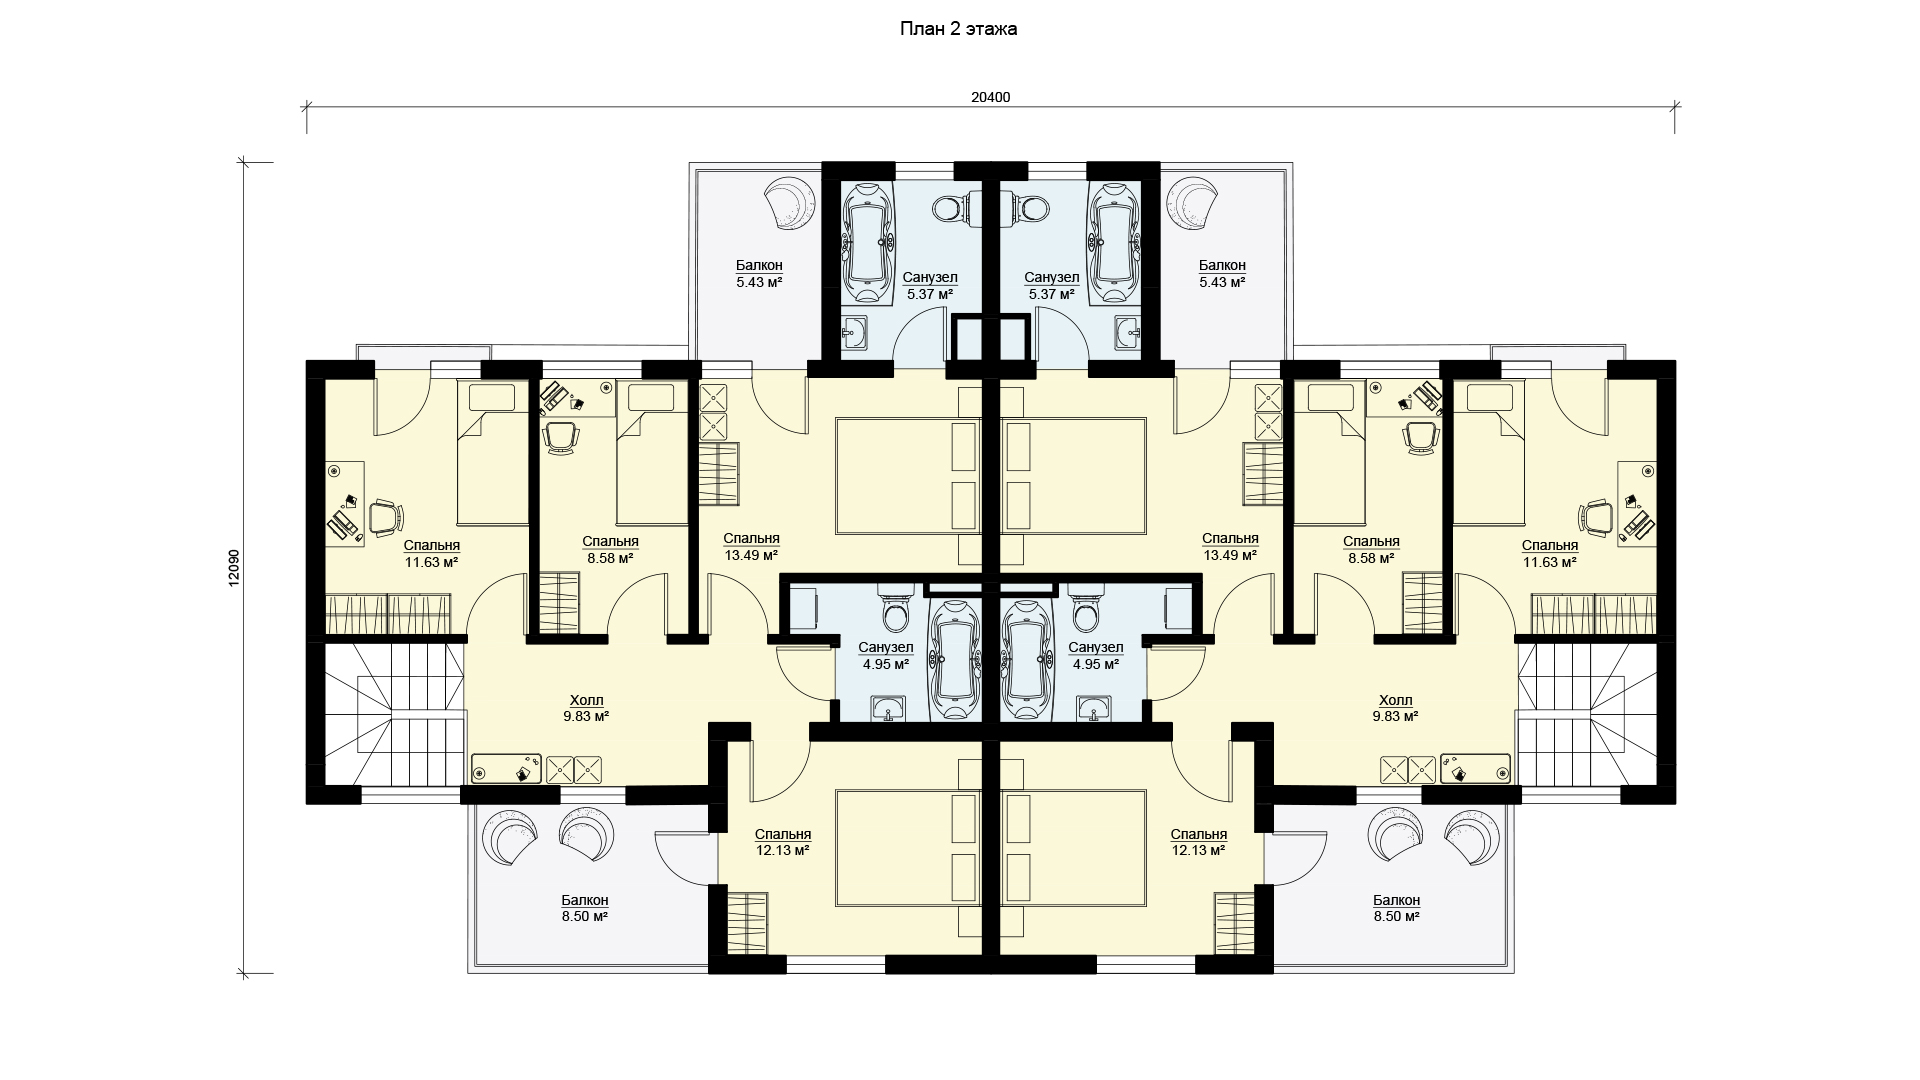 Планировка второго этажа проекта МС-397 - дом на 2 семьи.